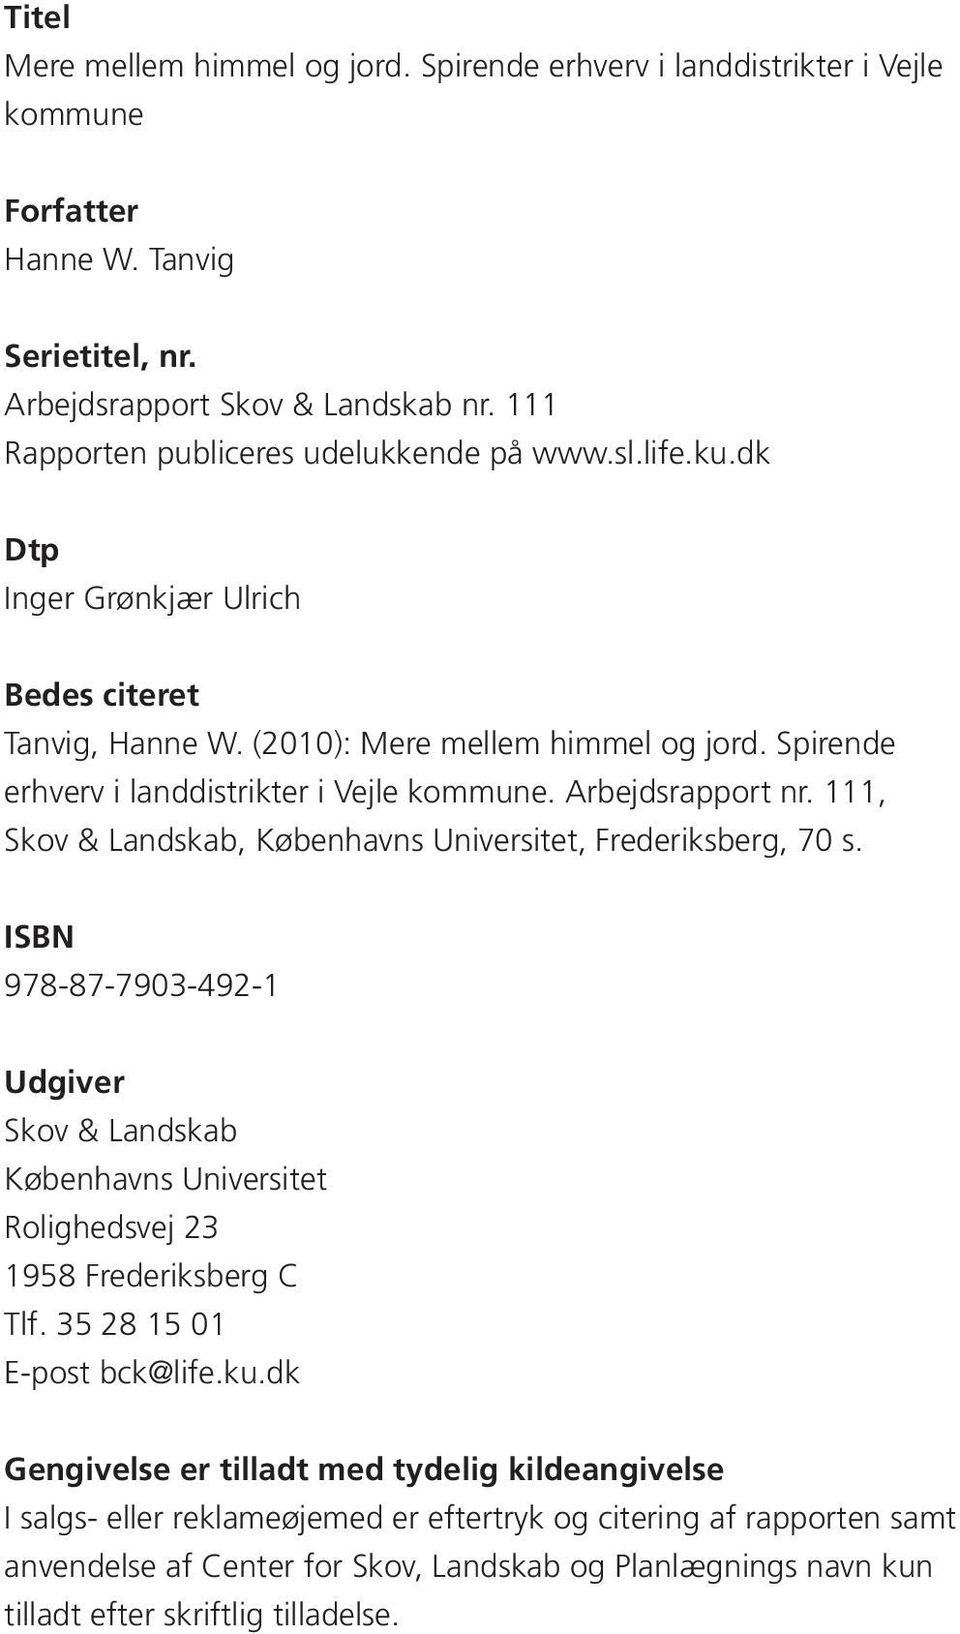 Spirende erhverv i landdistrikter i Vejle kommune. Arbejdsrapport nr. 111, Skov & Landskab, Københavns Universitet, Frederiksberg, 70 s.